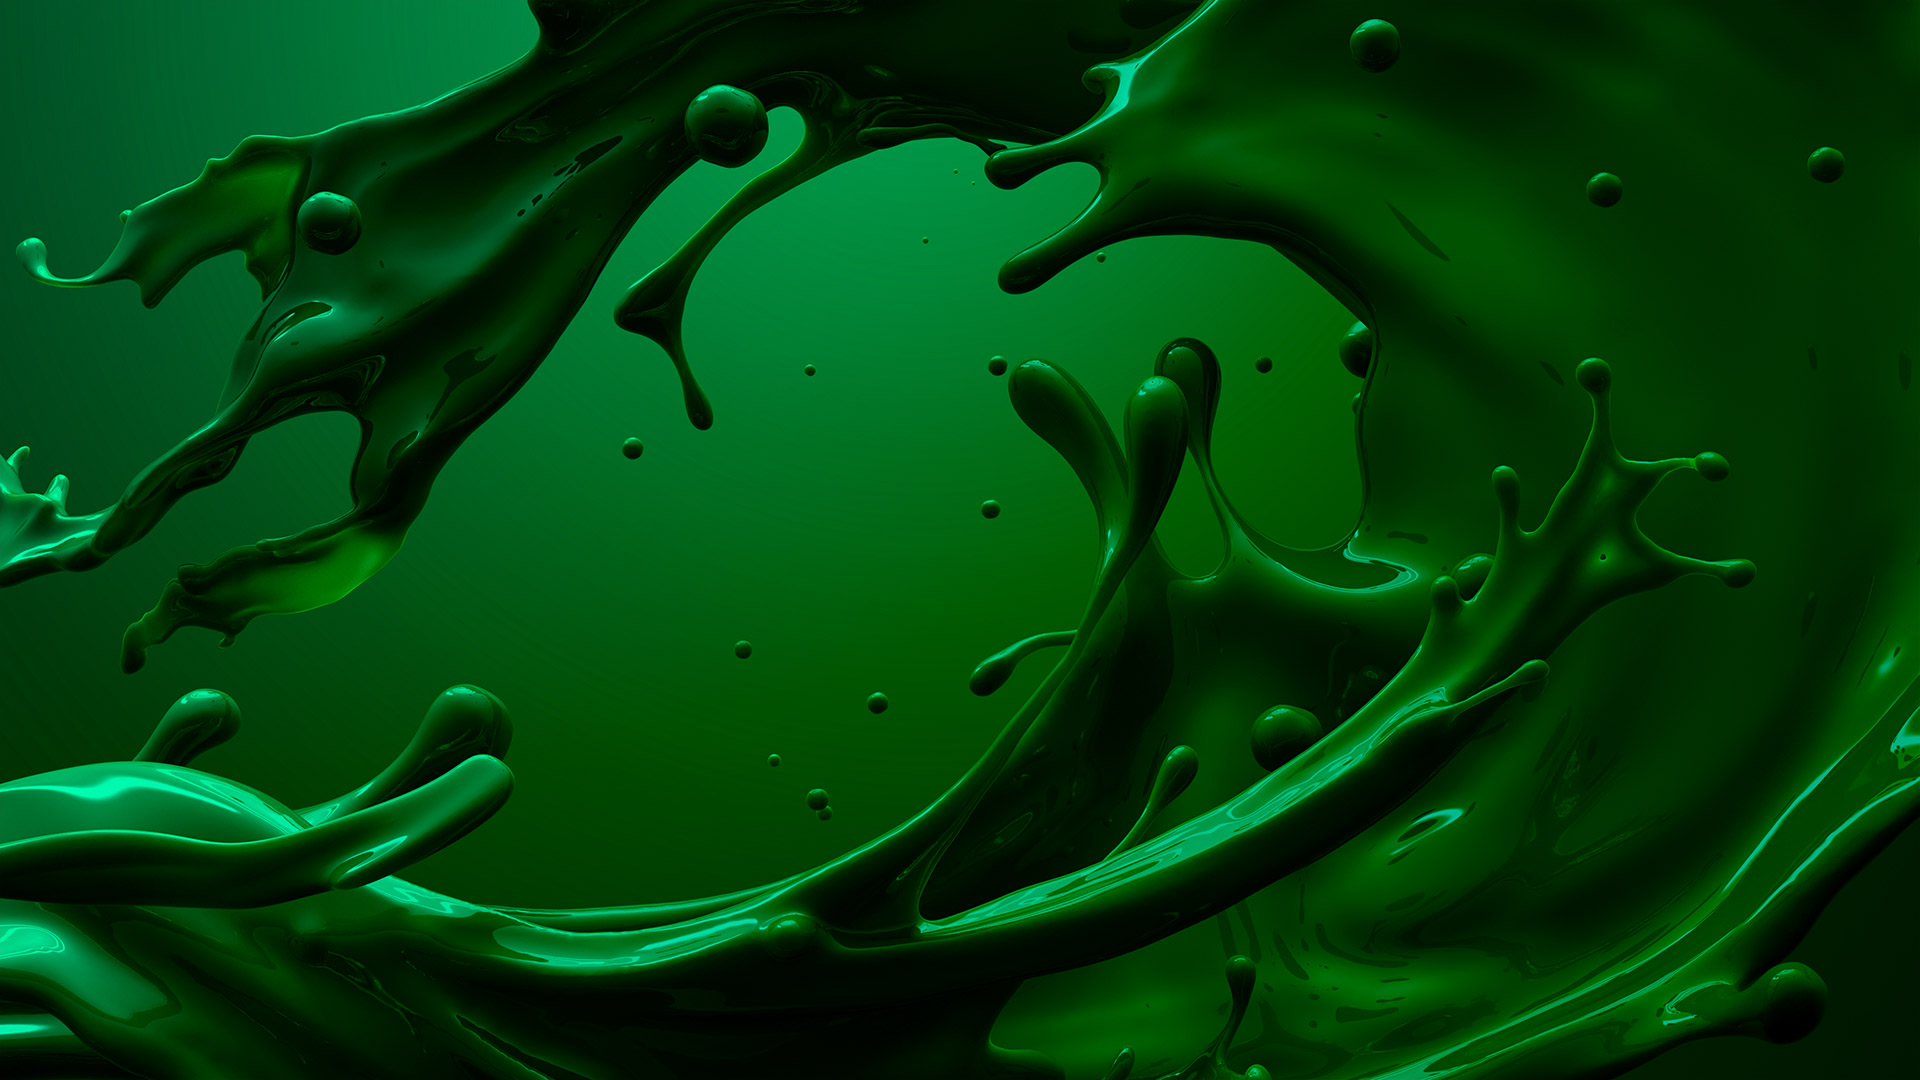 Big green splash